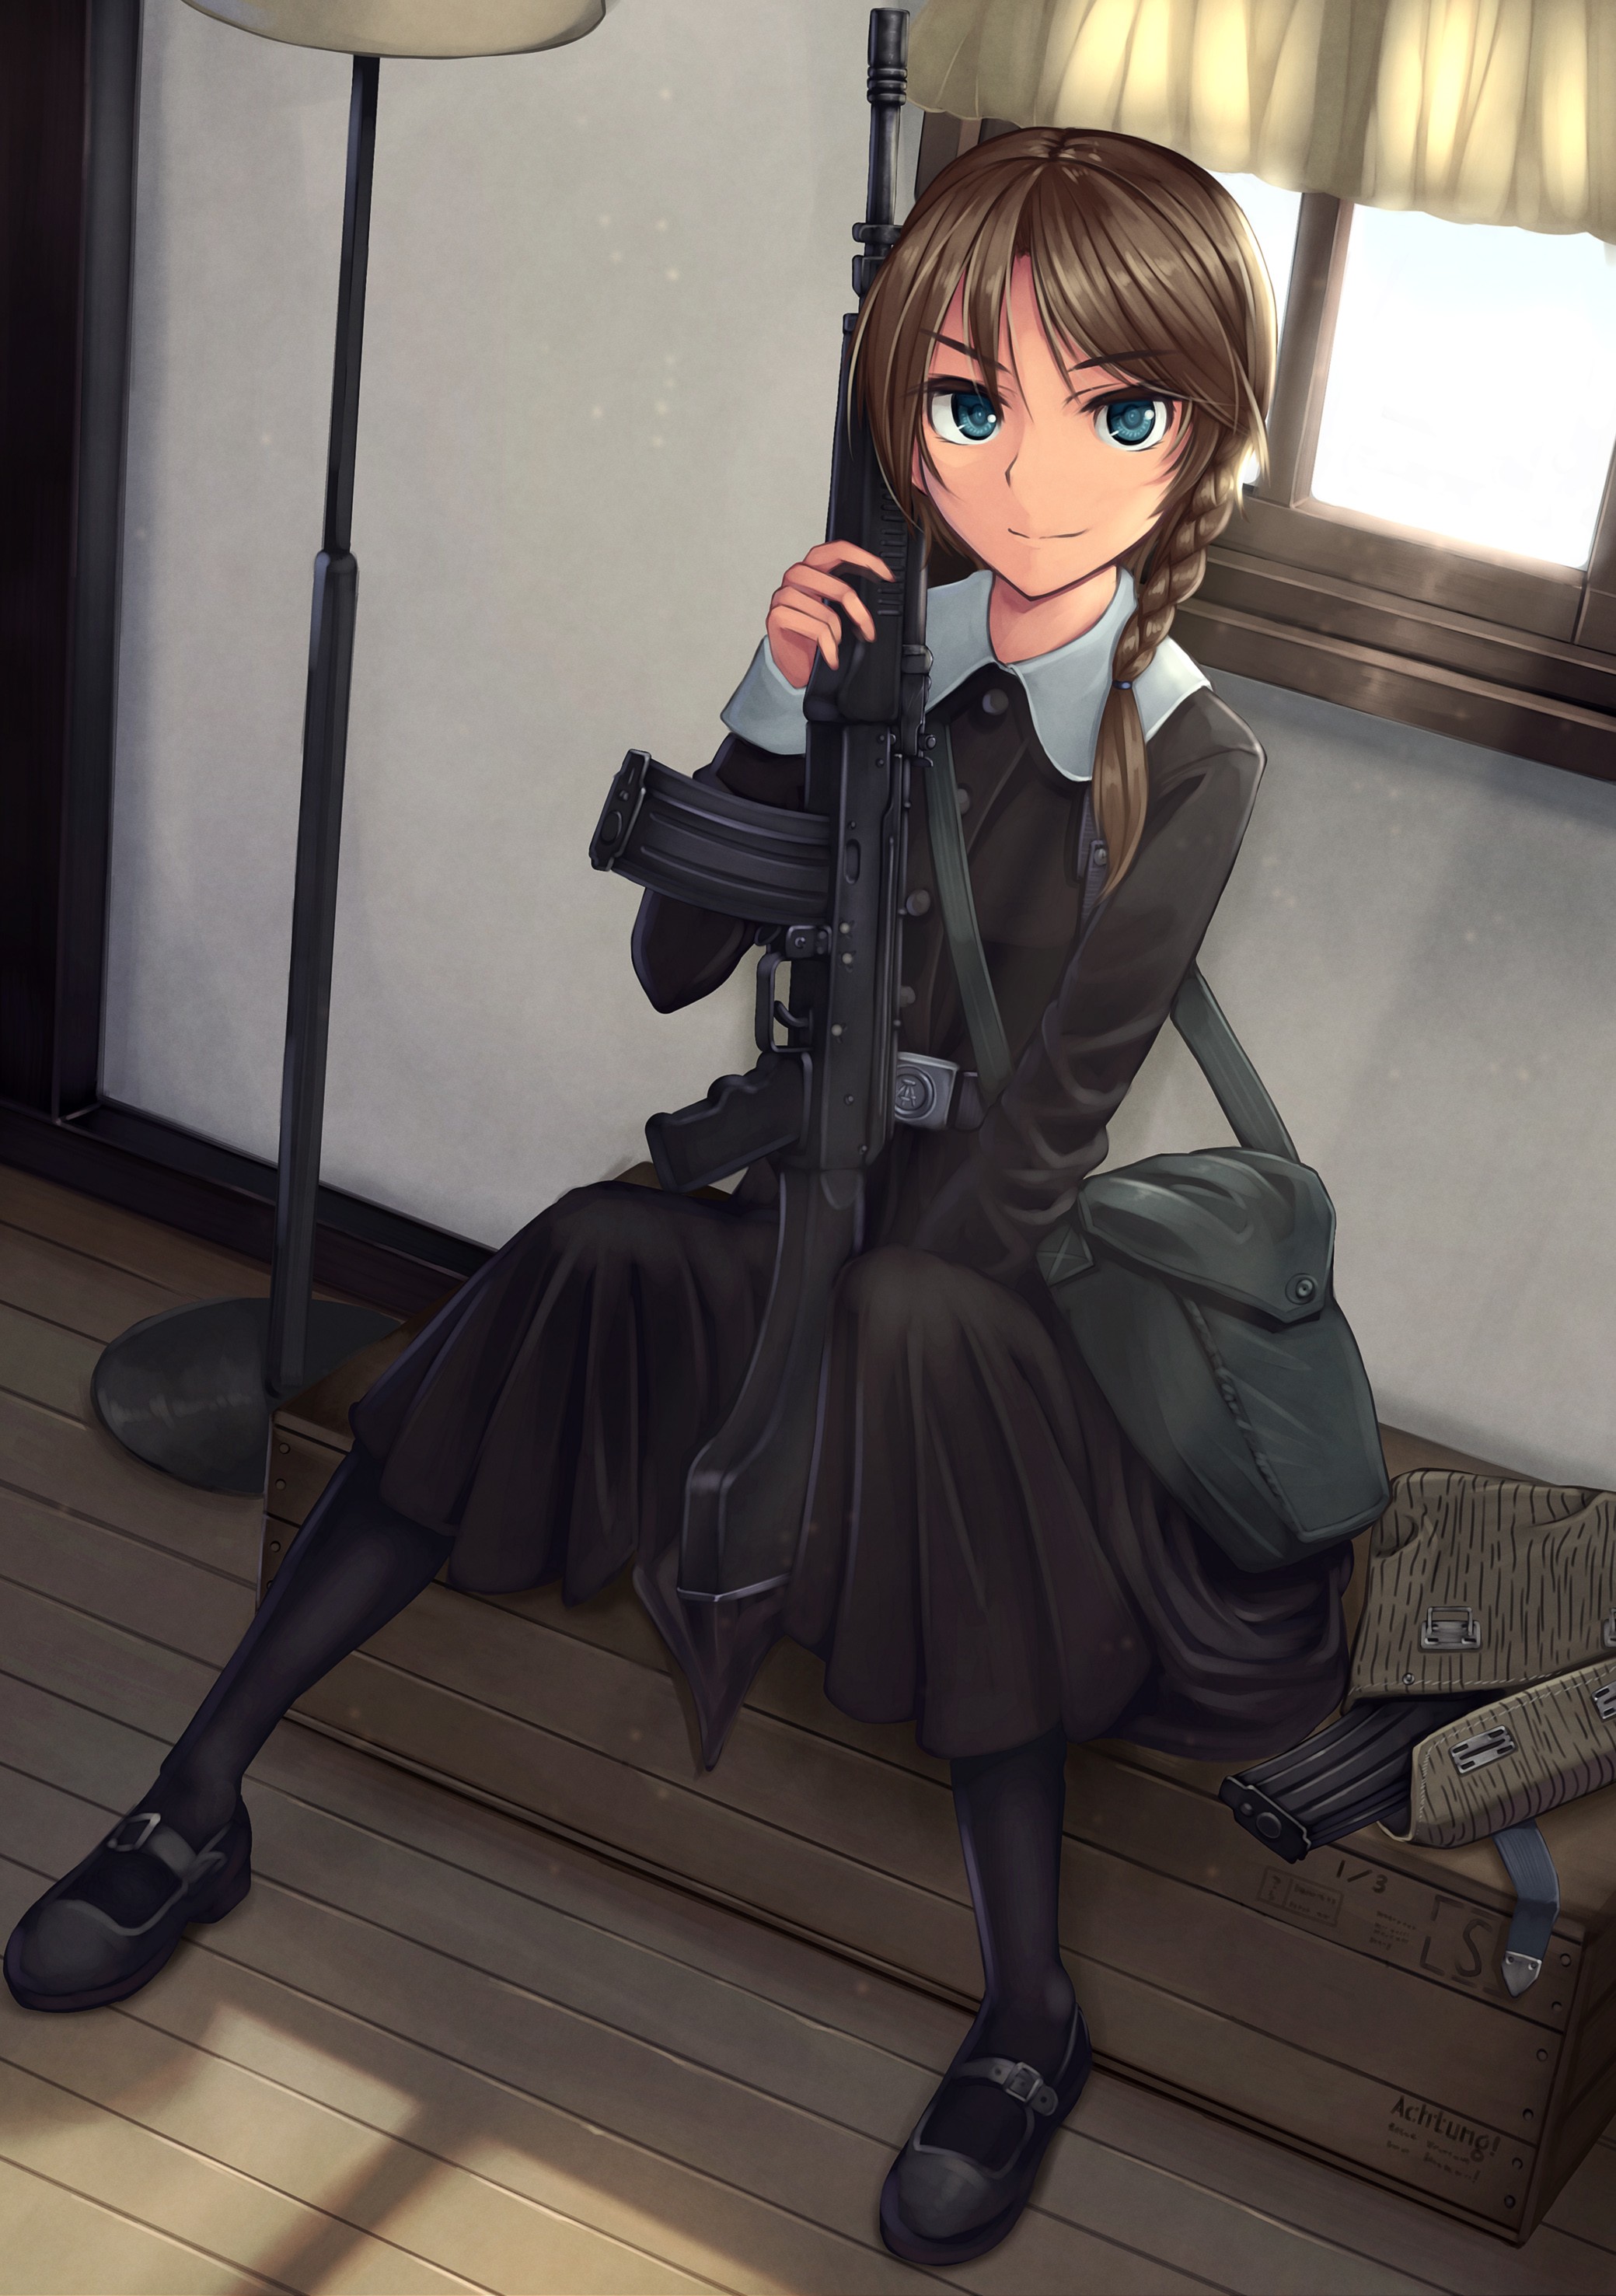 Anime 2079x2953 anime anime girls gun weapon long hair blue eyes machine gun looking at viewer Pixiv black clothing girls with guns sitting